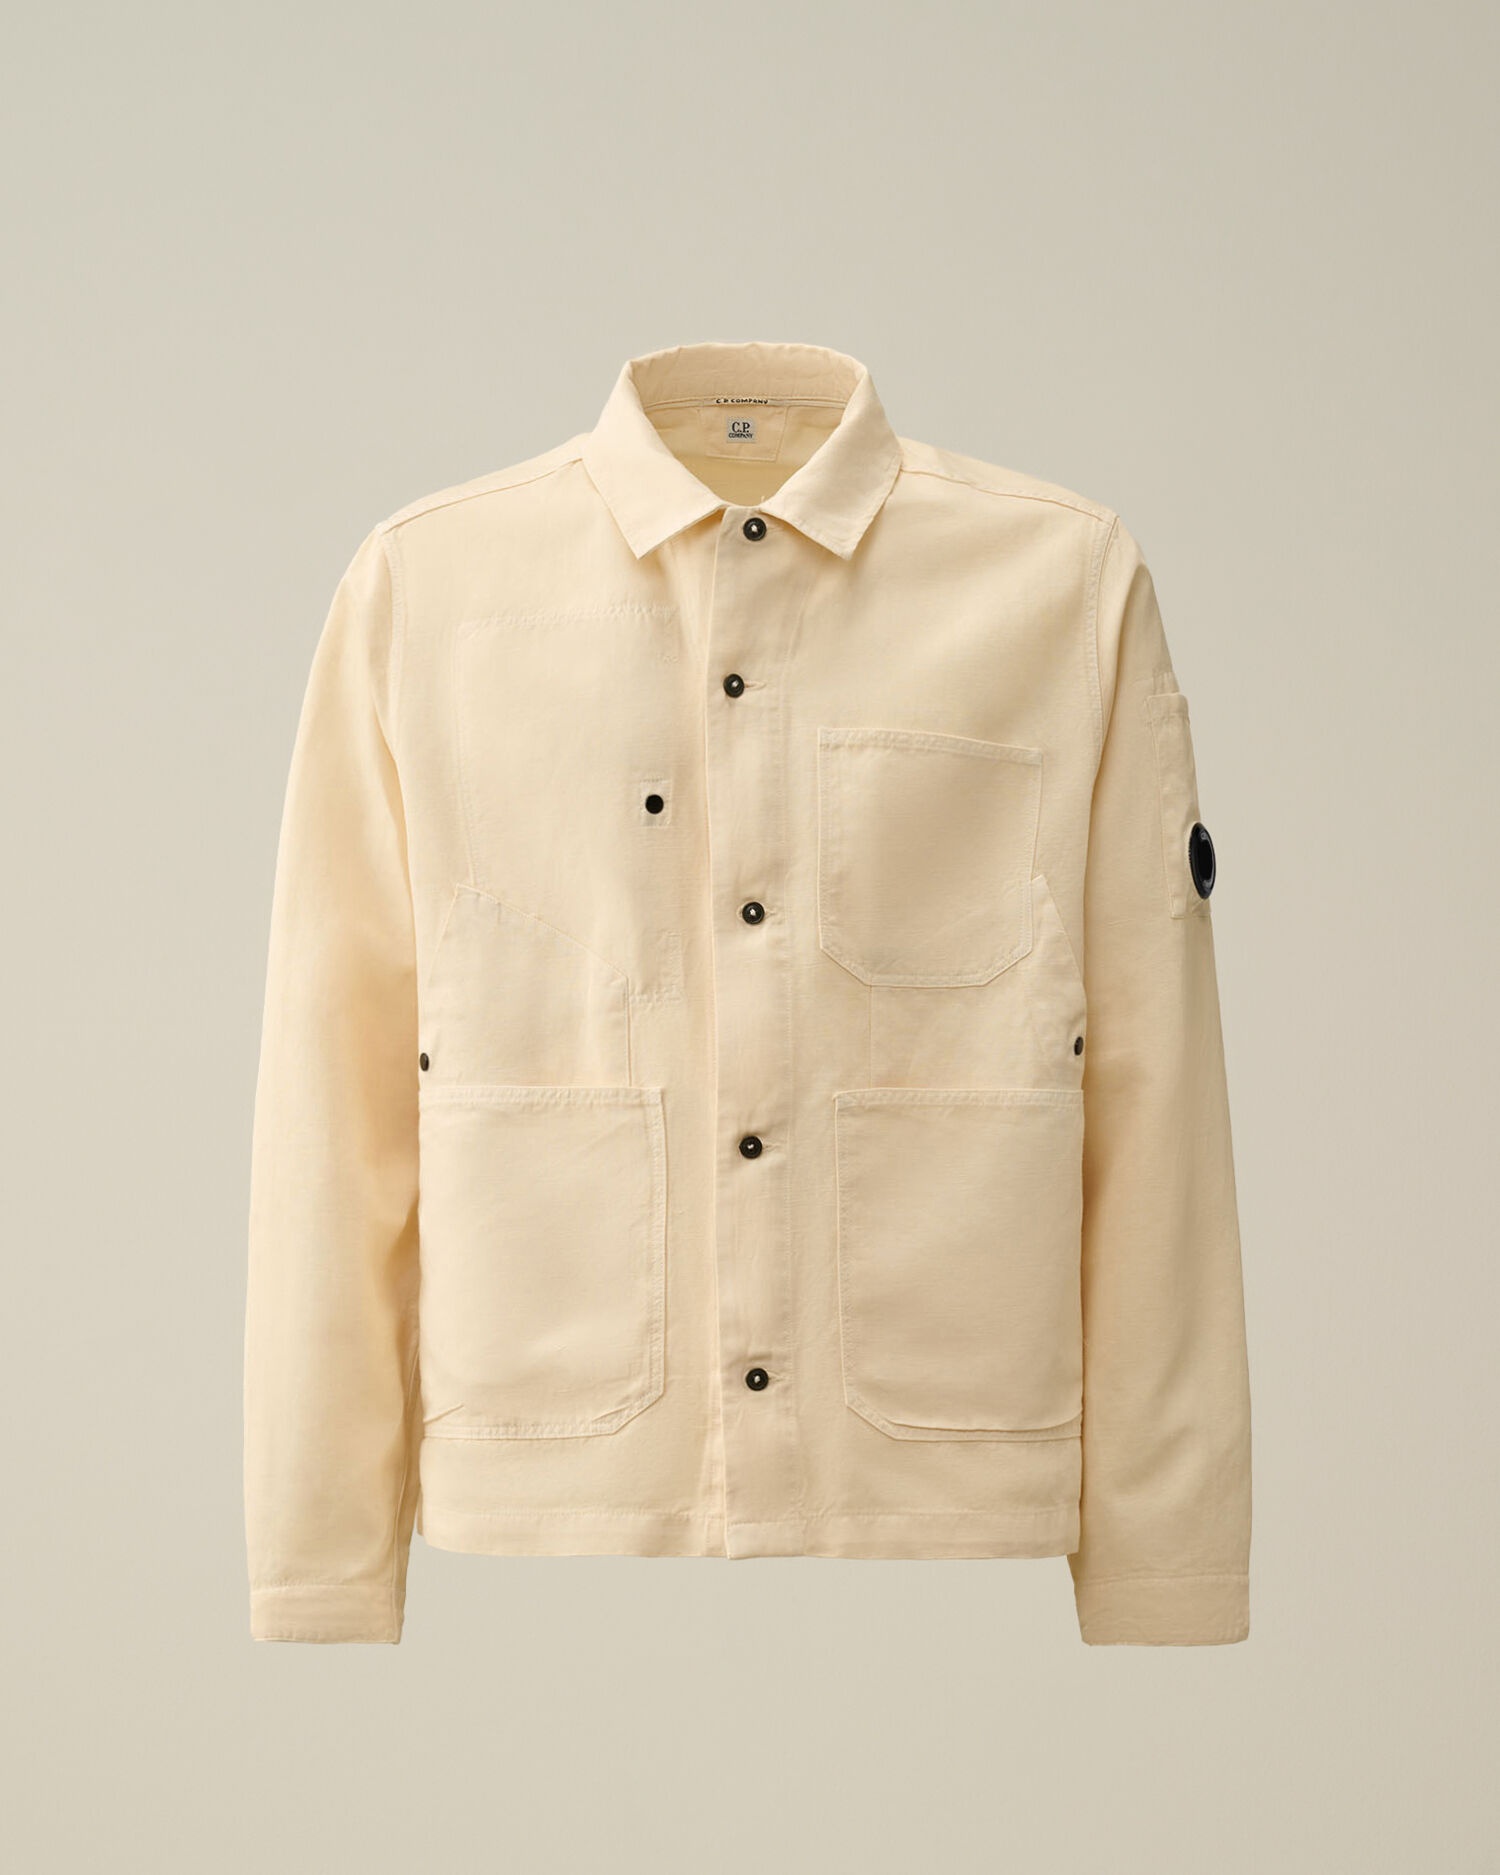 Cotton/Linen Overshirt - 1